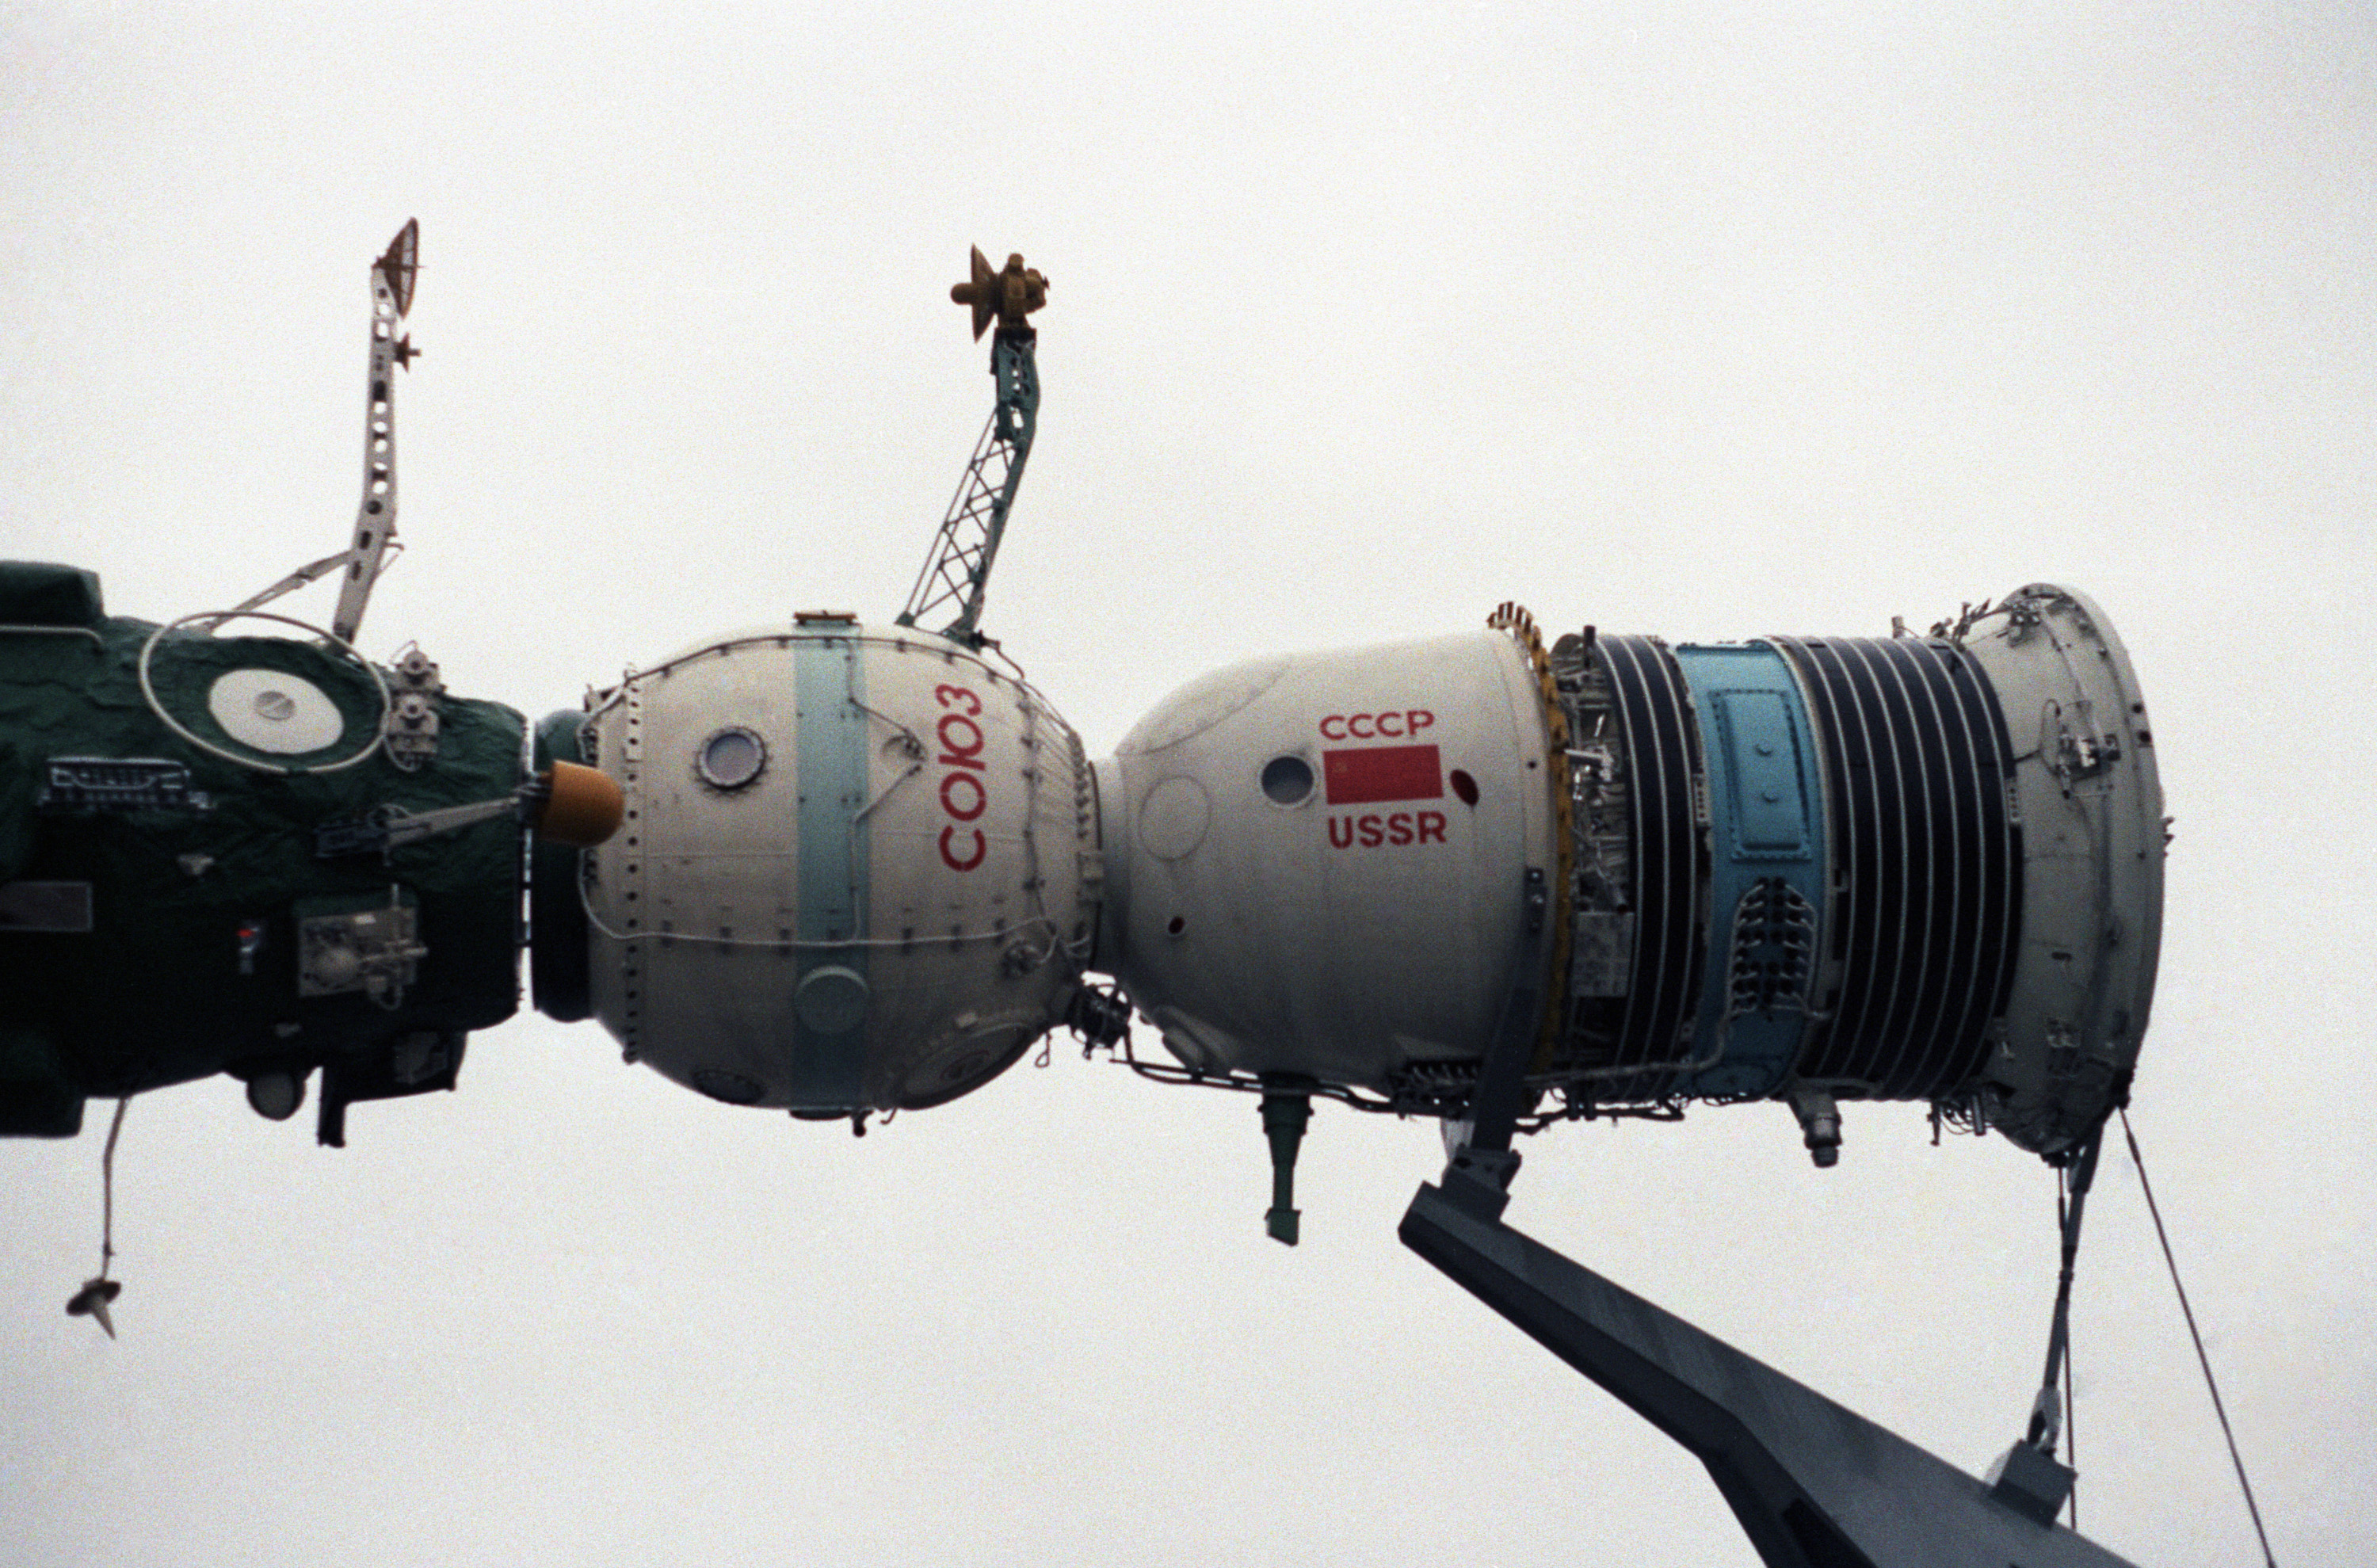 Первый полет космического корабля союз. Космический корабль Союз СССР. Союз-23 пилотируемый космический корабль. Космический корабль Союз 1 СССР. Союз т-7 космический корабль.